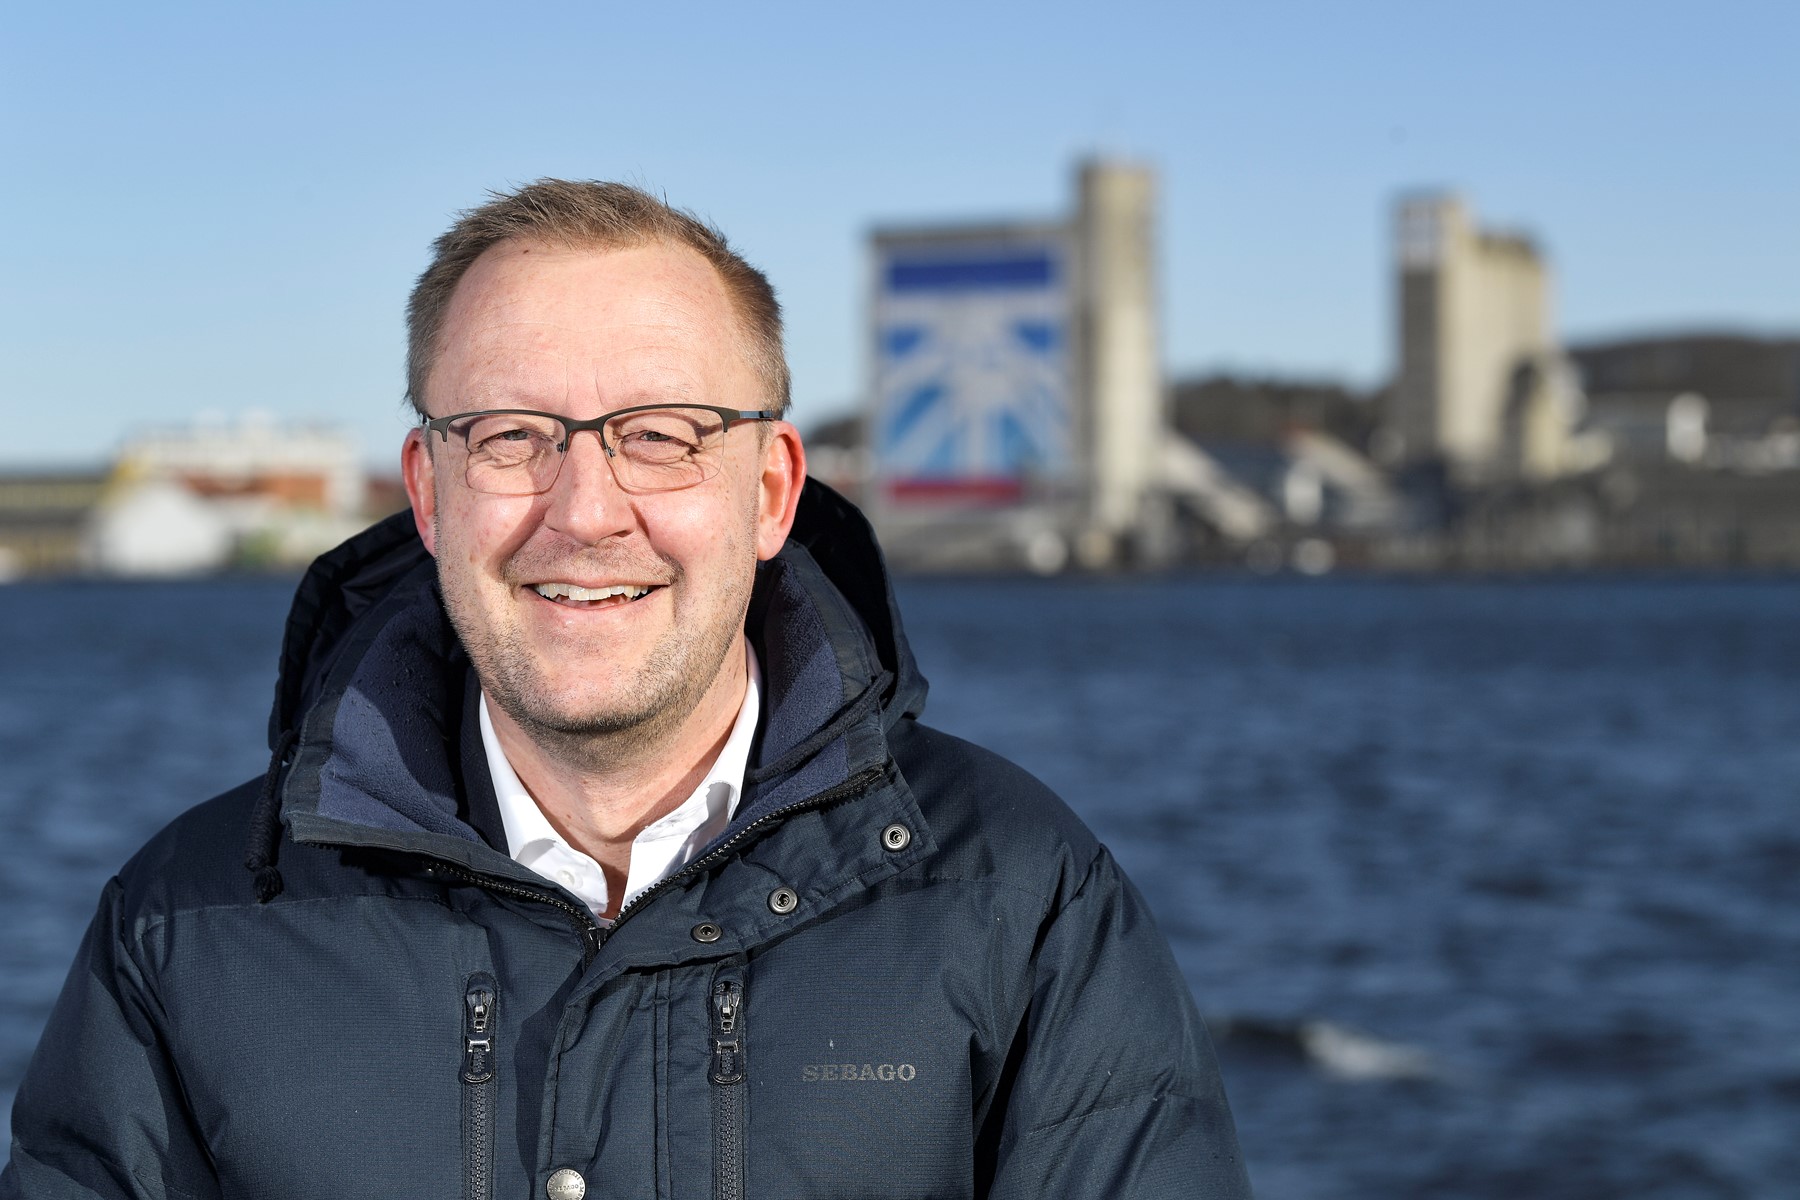 Ud over at være direktør i Erhverv Norddanmark sidder Kurt Bennetsen i en række bestyrelsesposter. Foto: Claus Søndberg.